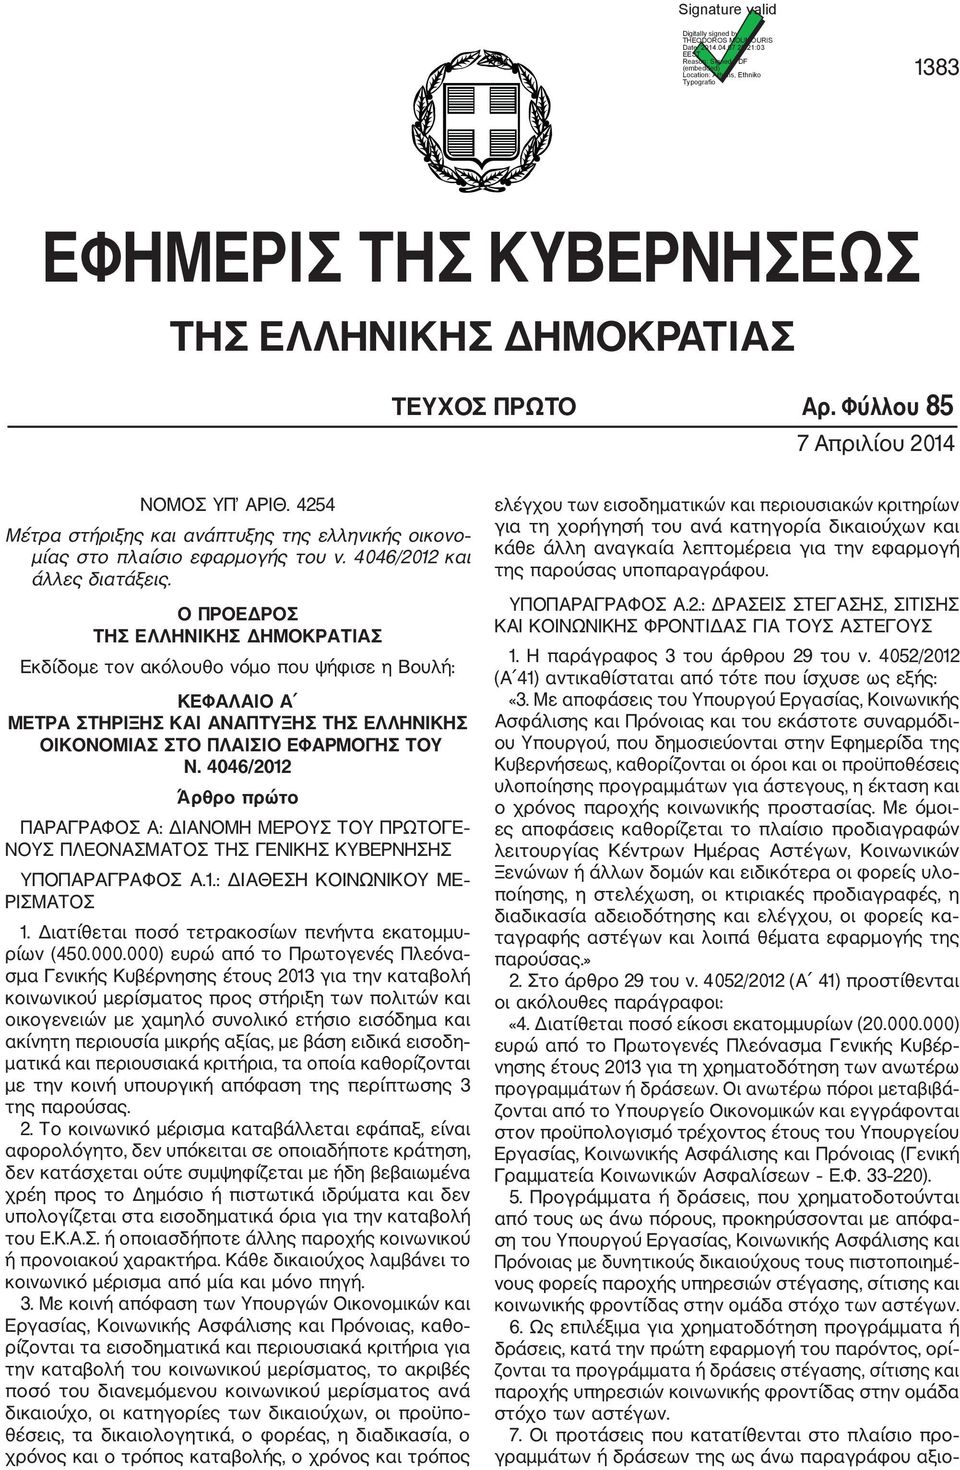 4254 Μέτρα στήριξης και ανάπτυξης της ελληνικής οικονο µίας στο πλαίσιο εφαρµογής του ν. 4046/2012 και άλλες διατάξεις.